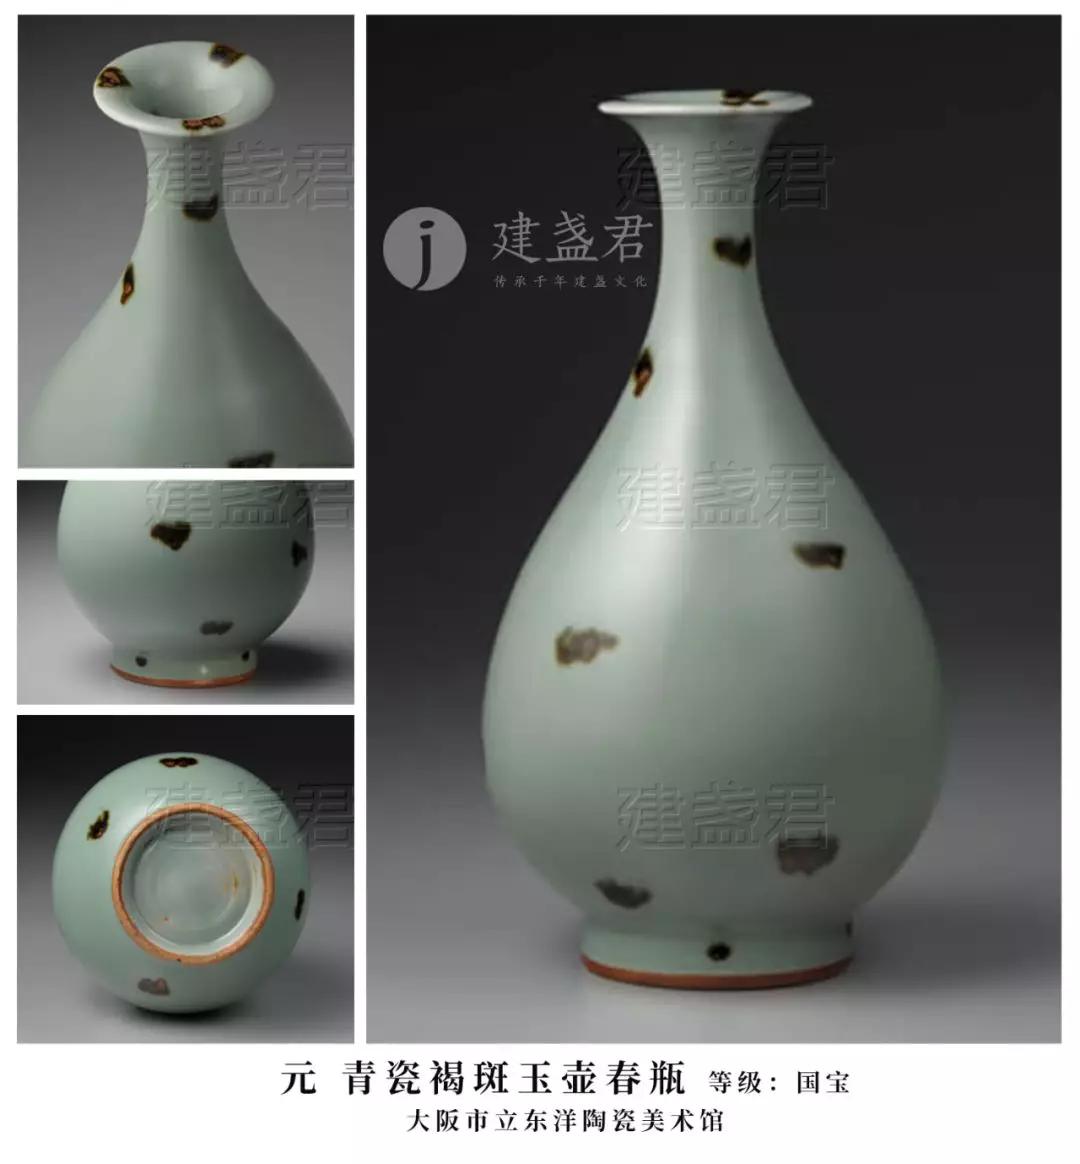 龙泉窑青瓷瓶，究竟有几种类型？为何能成为国宝，拍出四千万天价？| 宋 